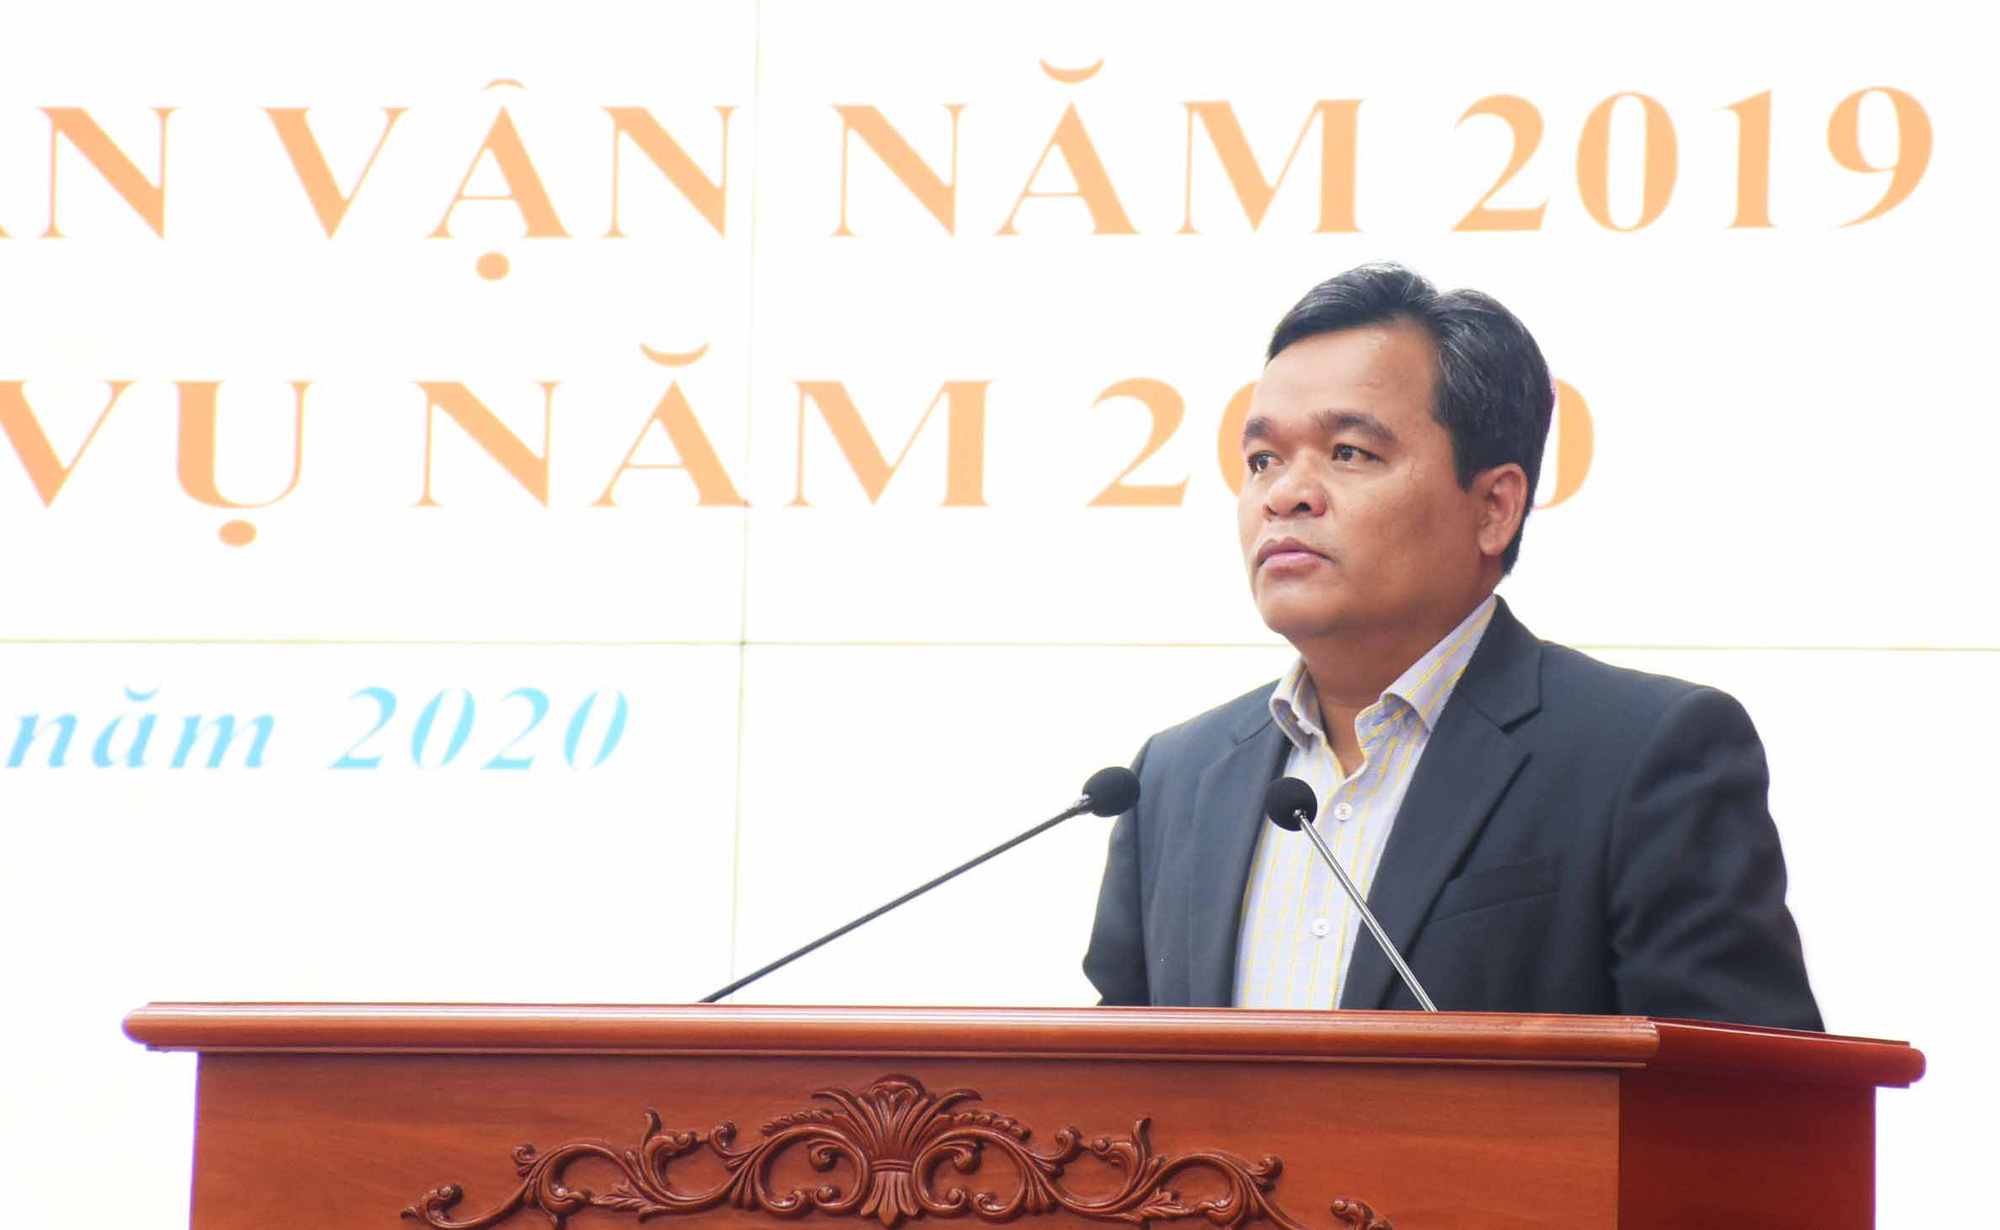 Bộ Chính trị công bố quyết định ông Hồ Văn Niên làm Bí thư Tỉnh ủy Gia Lai - Ảnh 1.